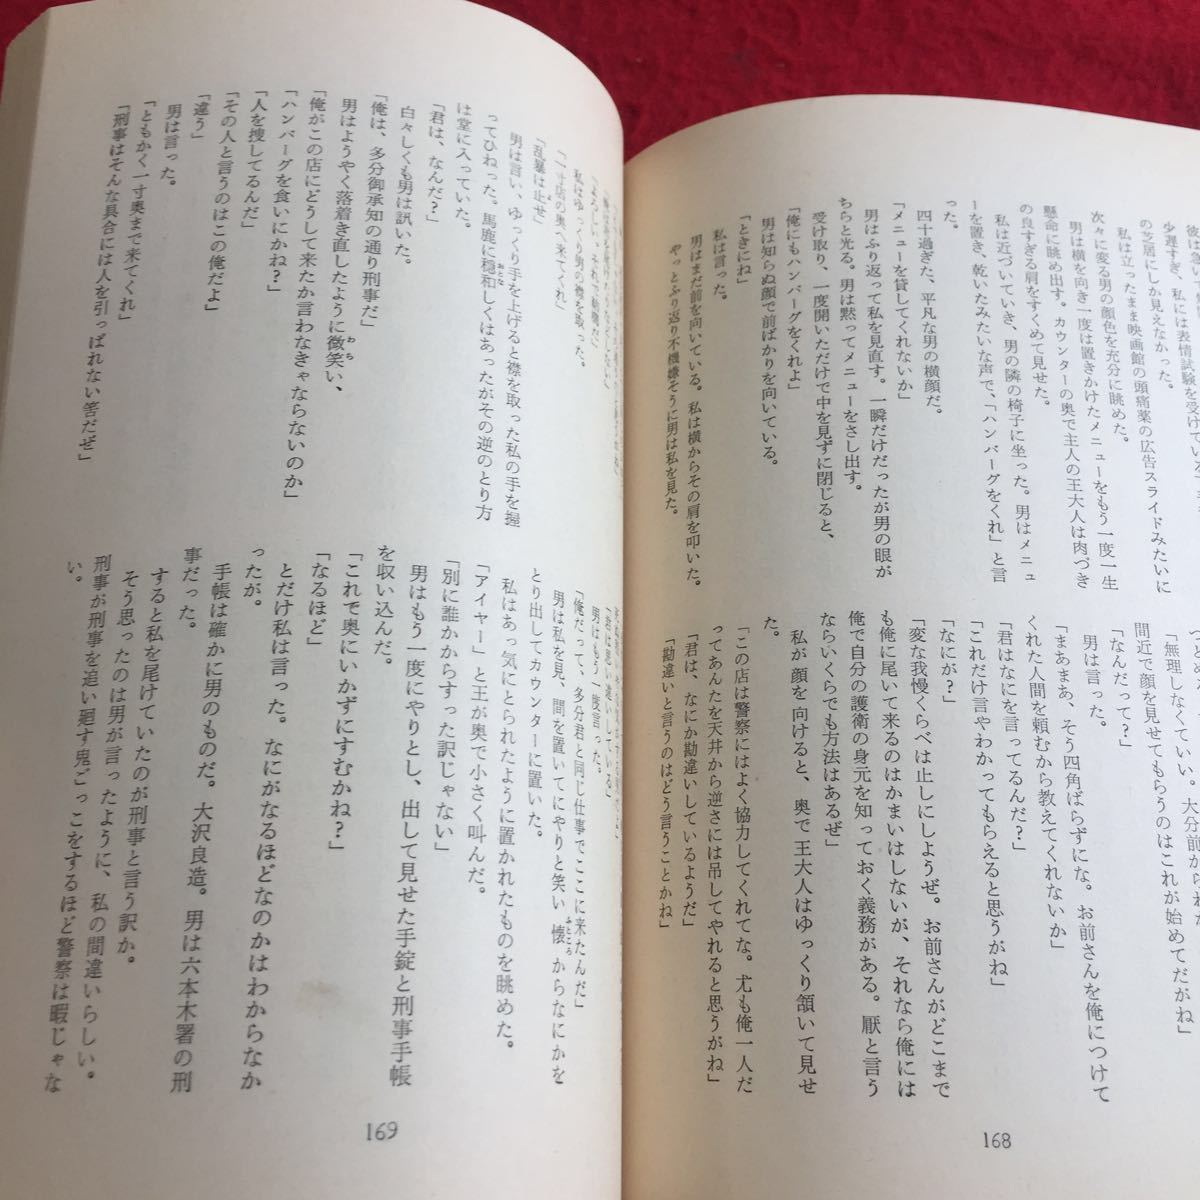 YZ-188 загрязнения . ночь Ishihara Shintaro с коробкой Showa 36 год выпуск Shinchosha "саспенс" . раз предмет детективный роман глаз следующий нет старый . выгорел цвет страница в целом .. было использовано 